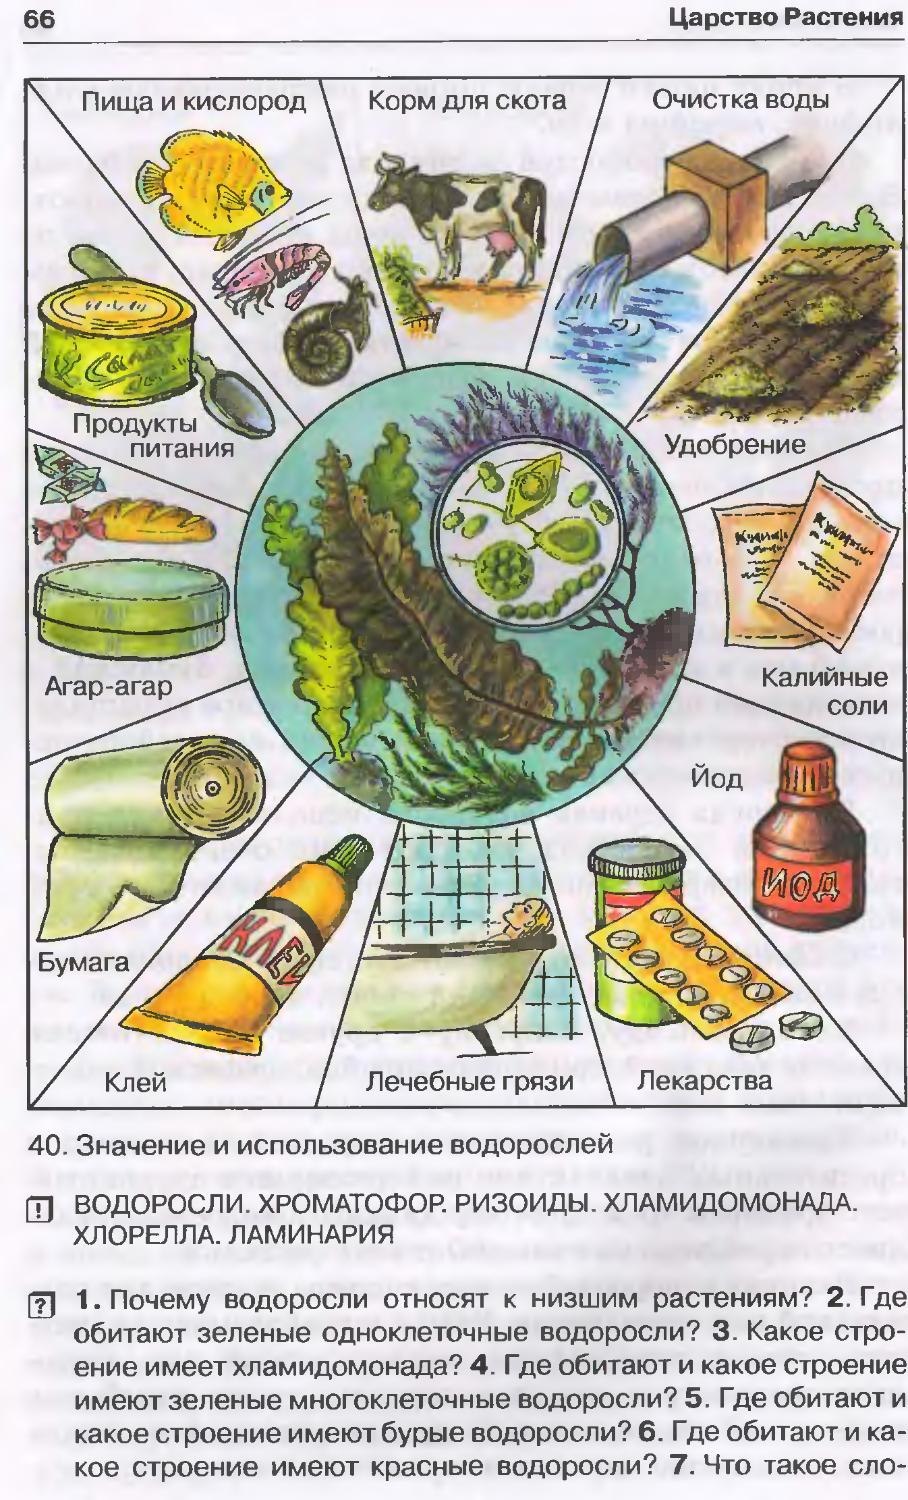 5 значений водорослей. Значение и использование водорослей. Роль водорослей в природе и жизни человека 5 класс биология. Схема использования водорослей. Схема роль водорослей в жизни человека.